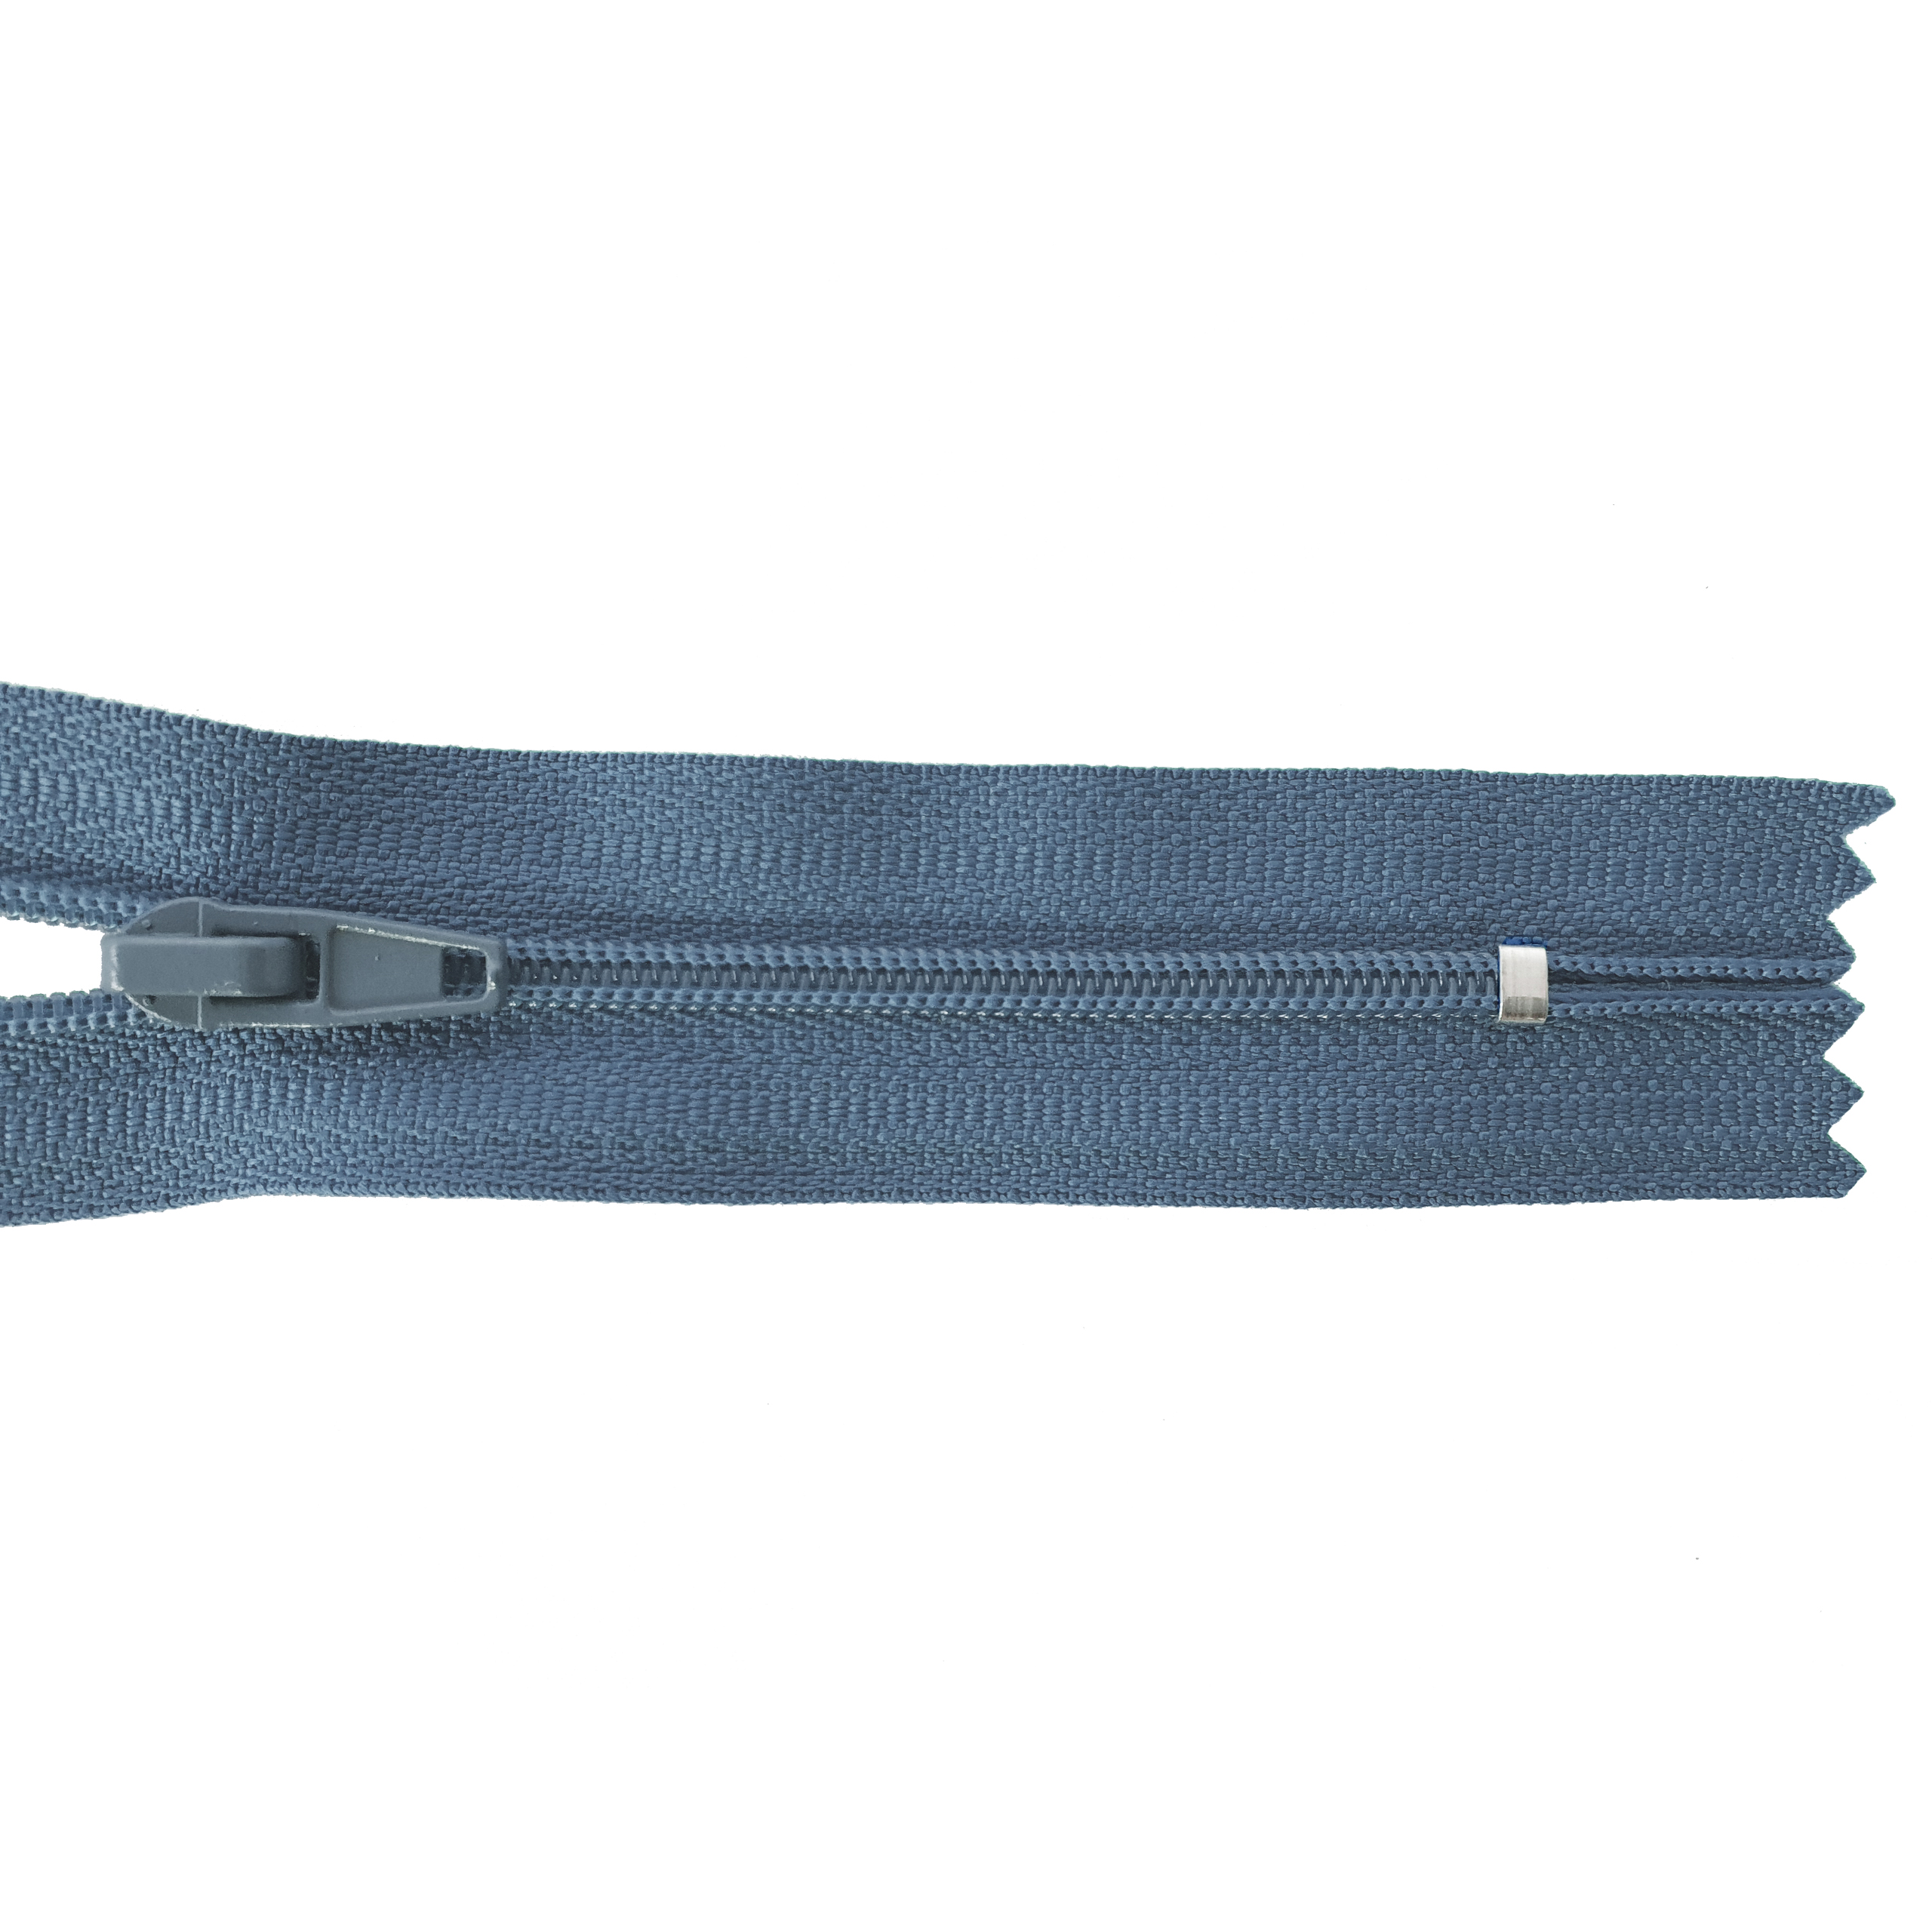 zipper 16cm,not divisible, PES spiral, fein, dark grey blue